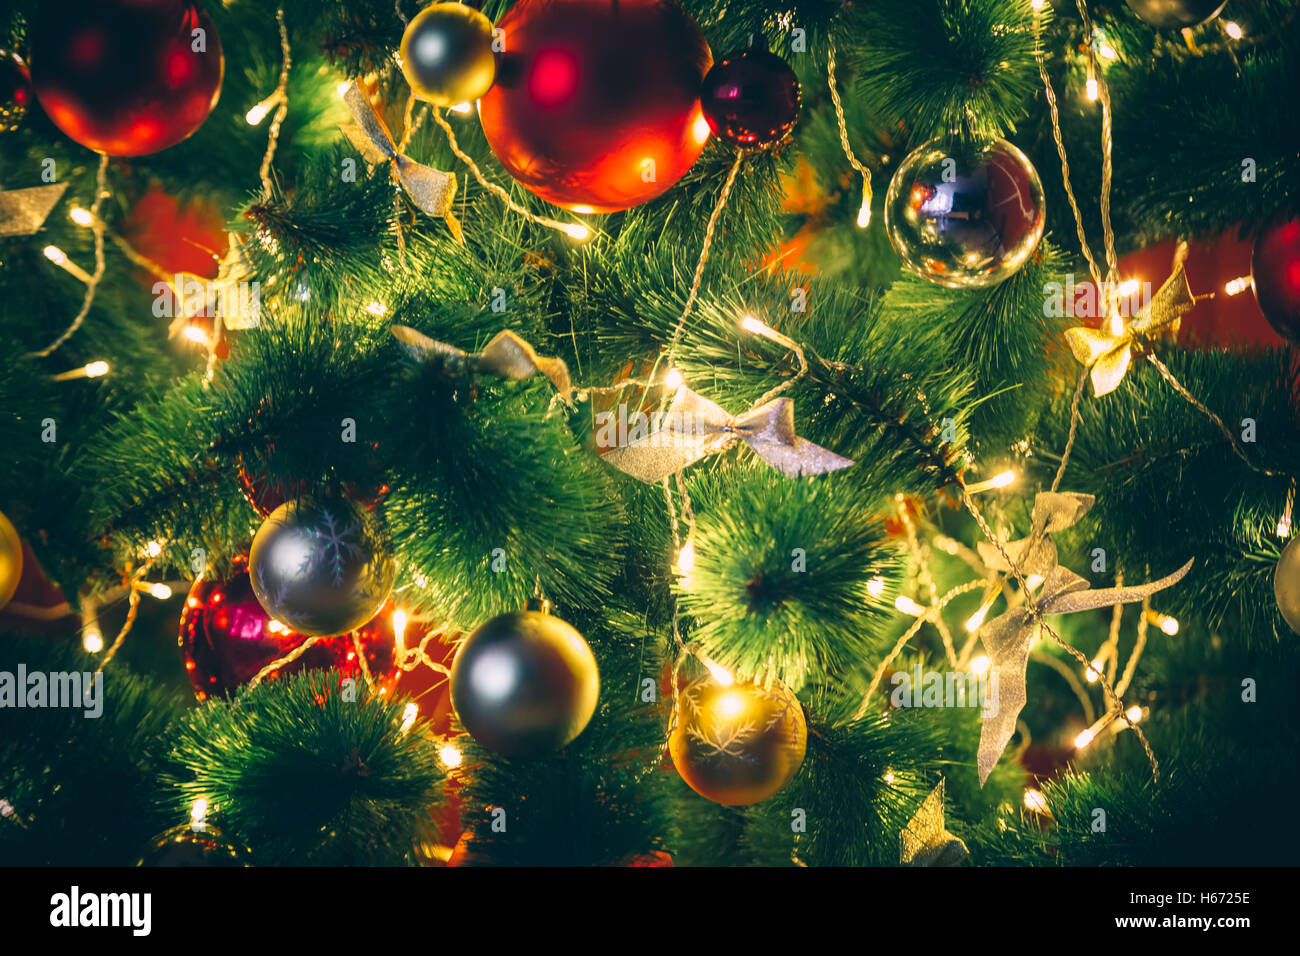 Hermoso árbol de navidad decorado con rojo y chucherías goldish y Garland, en el nuevo año. La idea de fondo de postales. Foto de stock